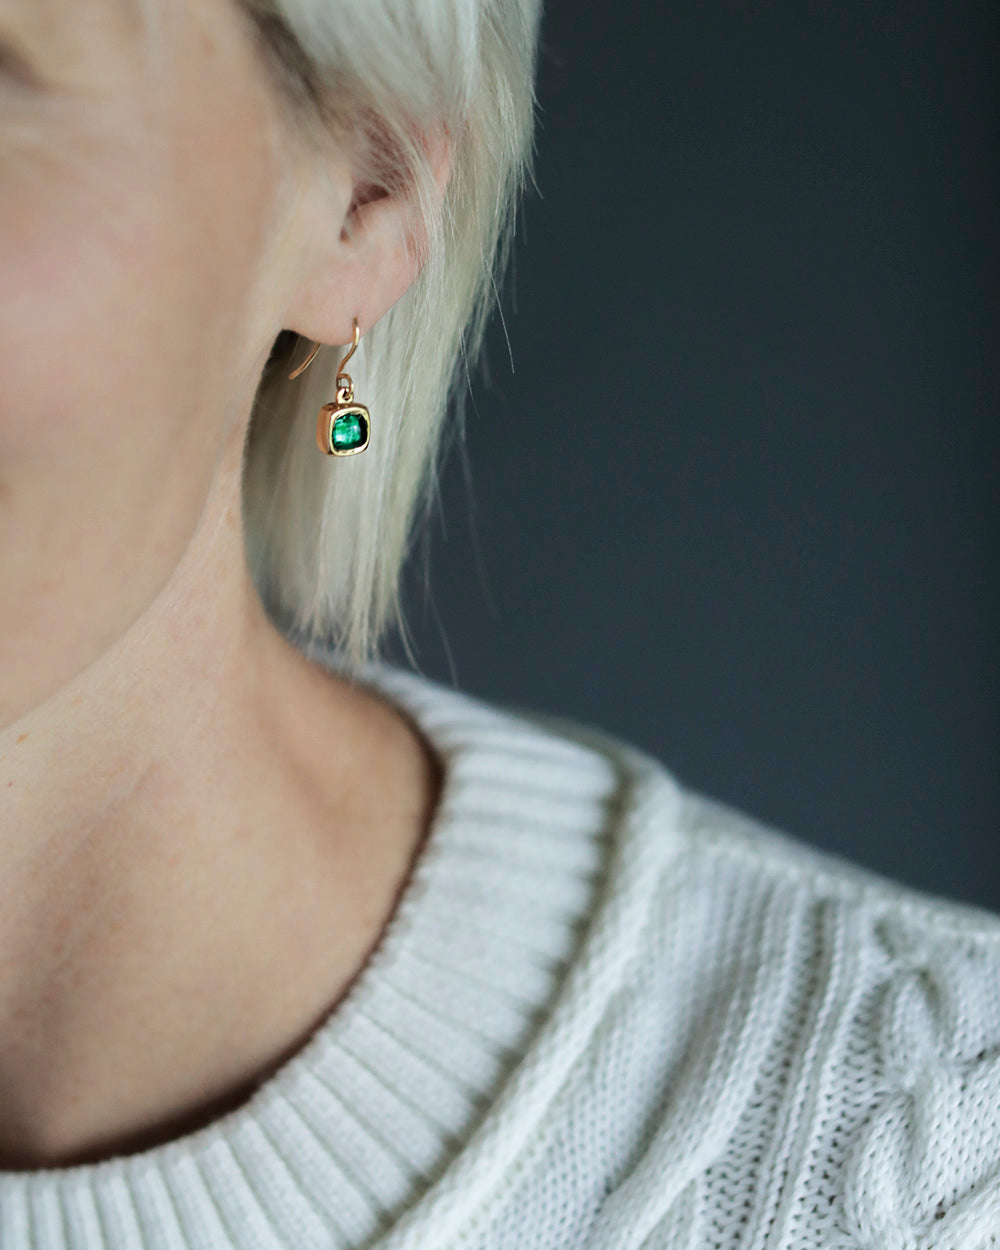 Colombian Emerald Jewelry, Dangling Emerald Earrings, 18k White Gold